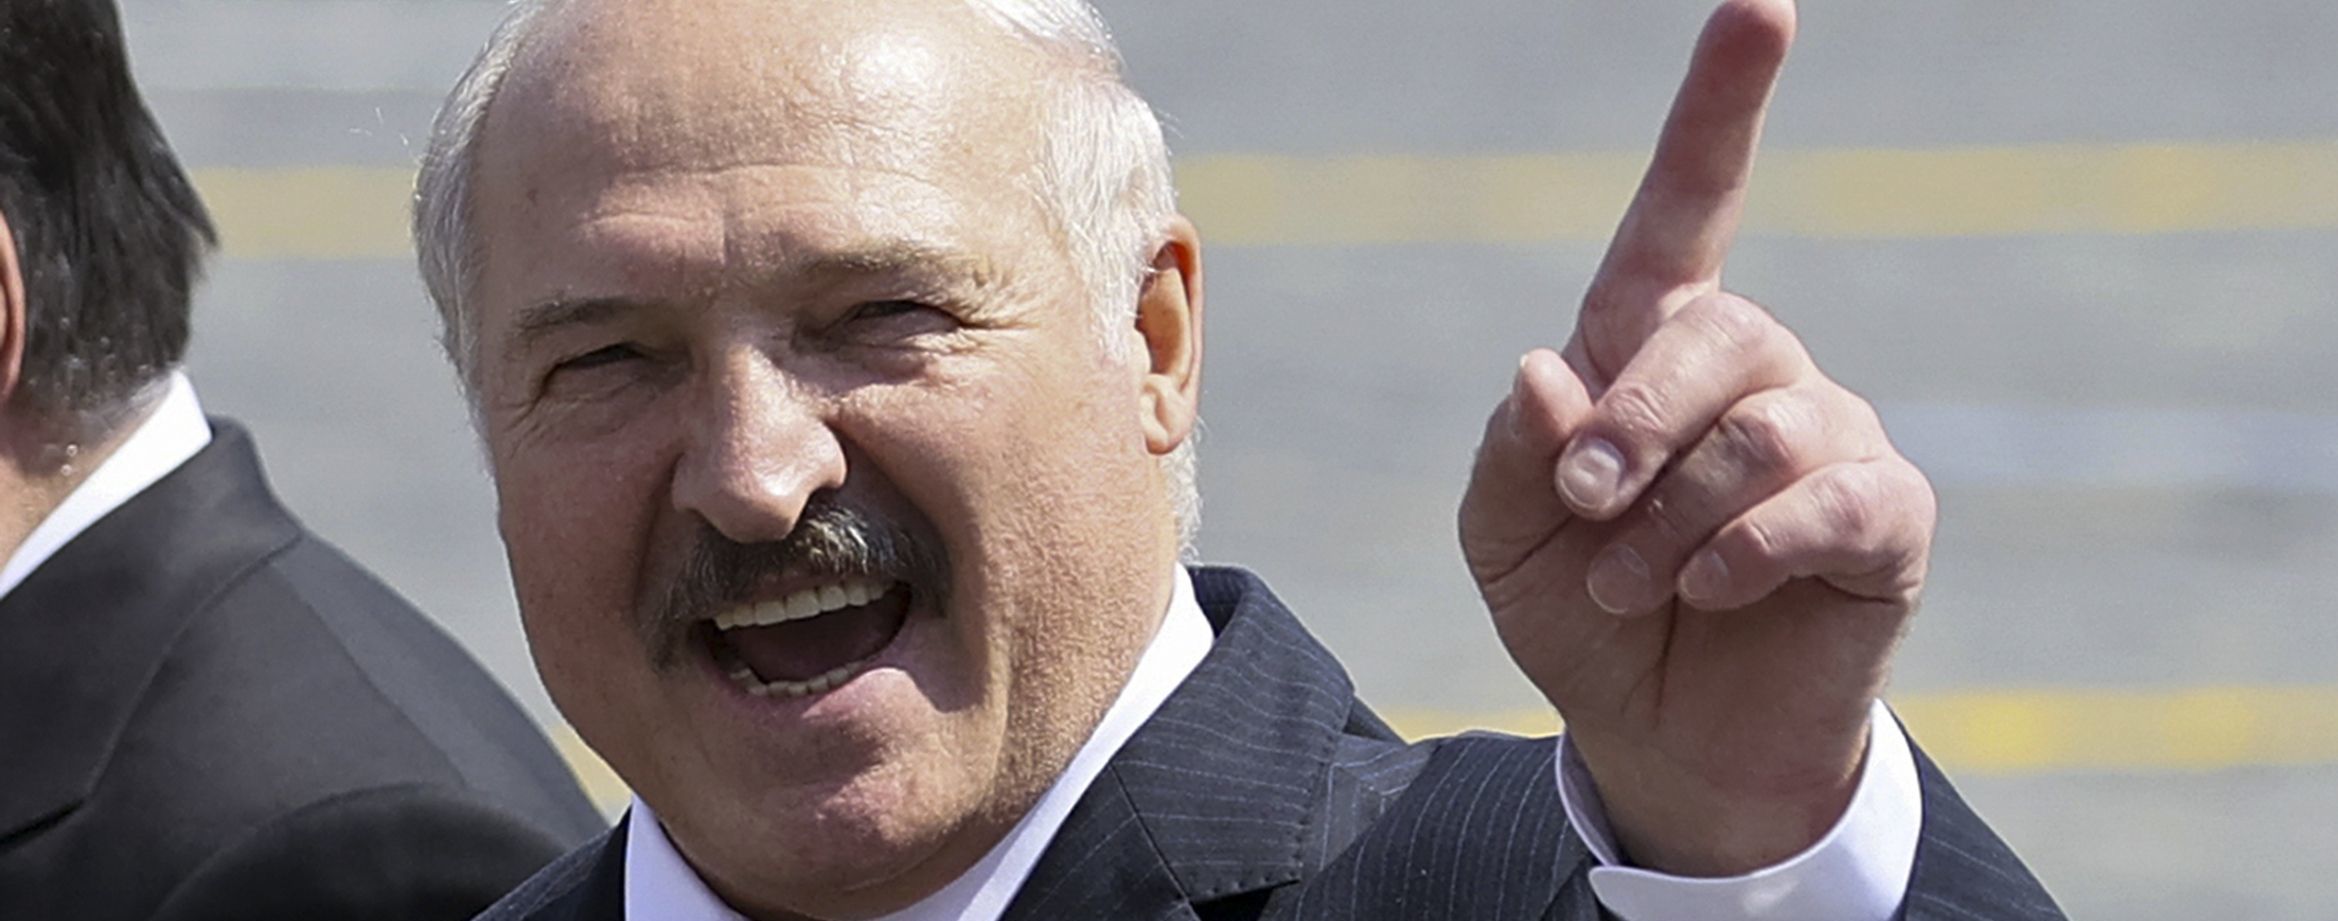 "На колени я не стану": Лукашенко заявил, что не уступит своим оппонентам